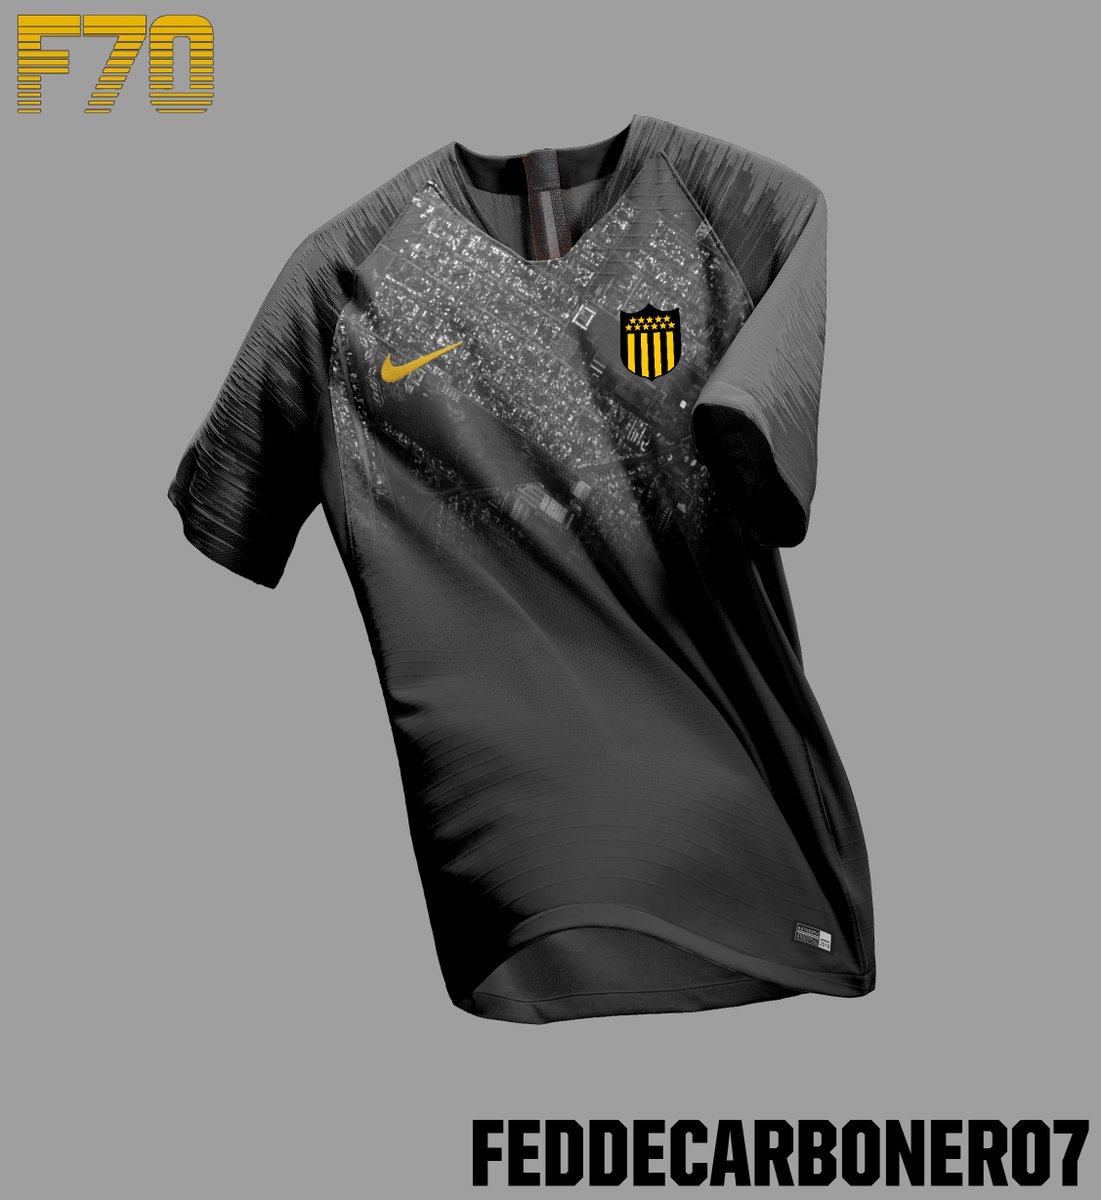 Fedde70 on Twitter: "Diseño rápido. Peñarol x Nike Lo que se ve en la es la vista aérea del Barrio Peñarol. No se de quien es el mockup. https://t.co/5ONrRYcaig" / Twitter